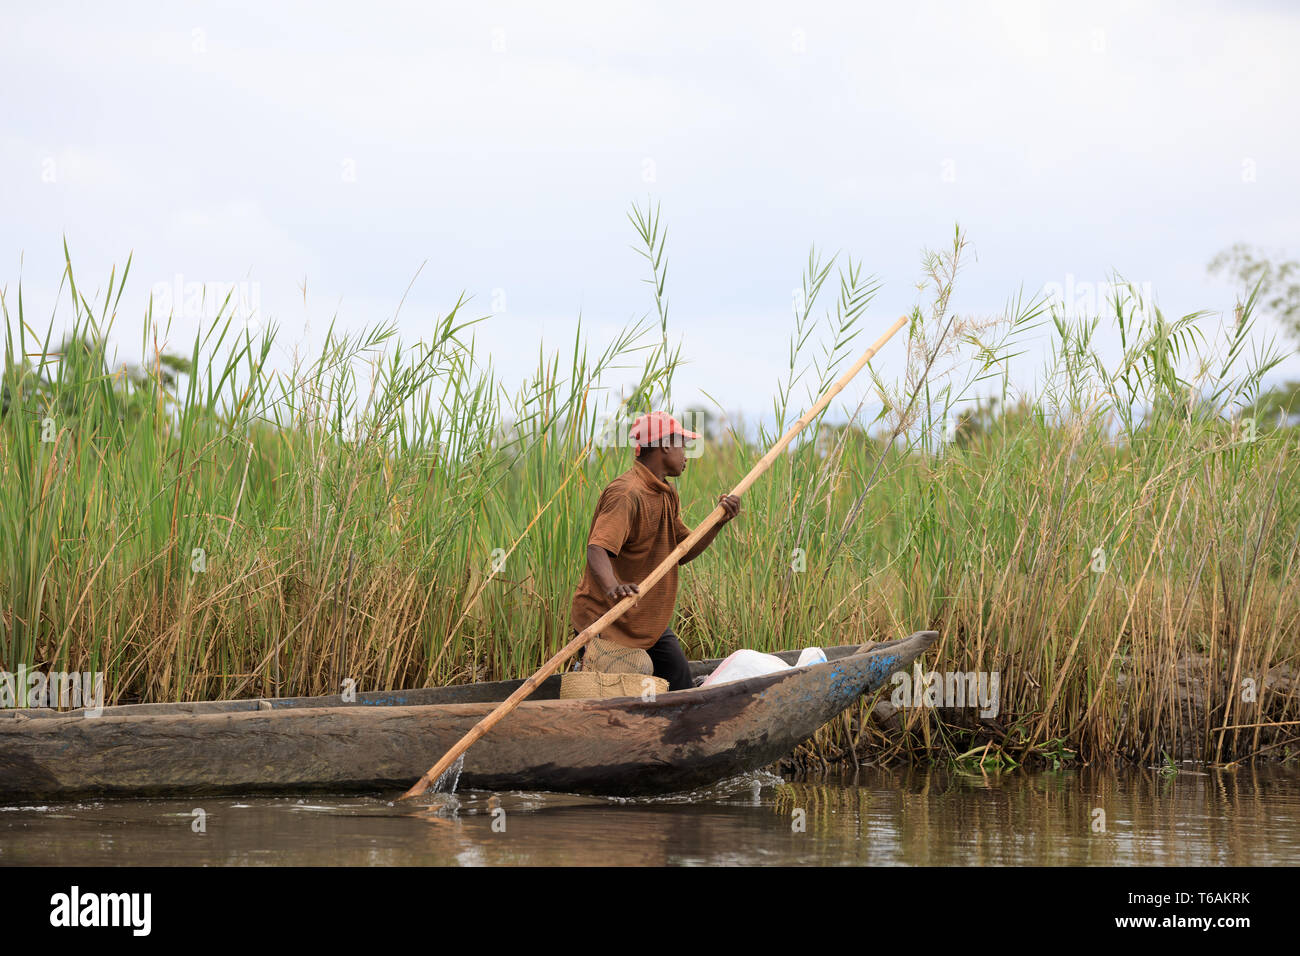 La vita in madagascar campagna sul fiume Foto Stock